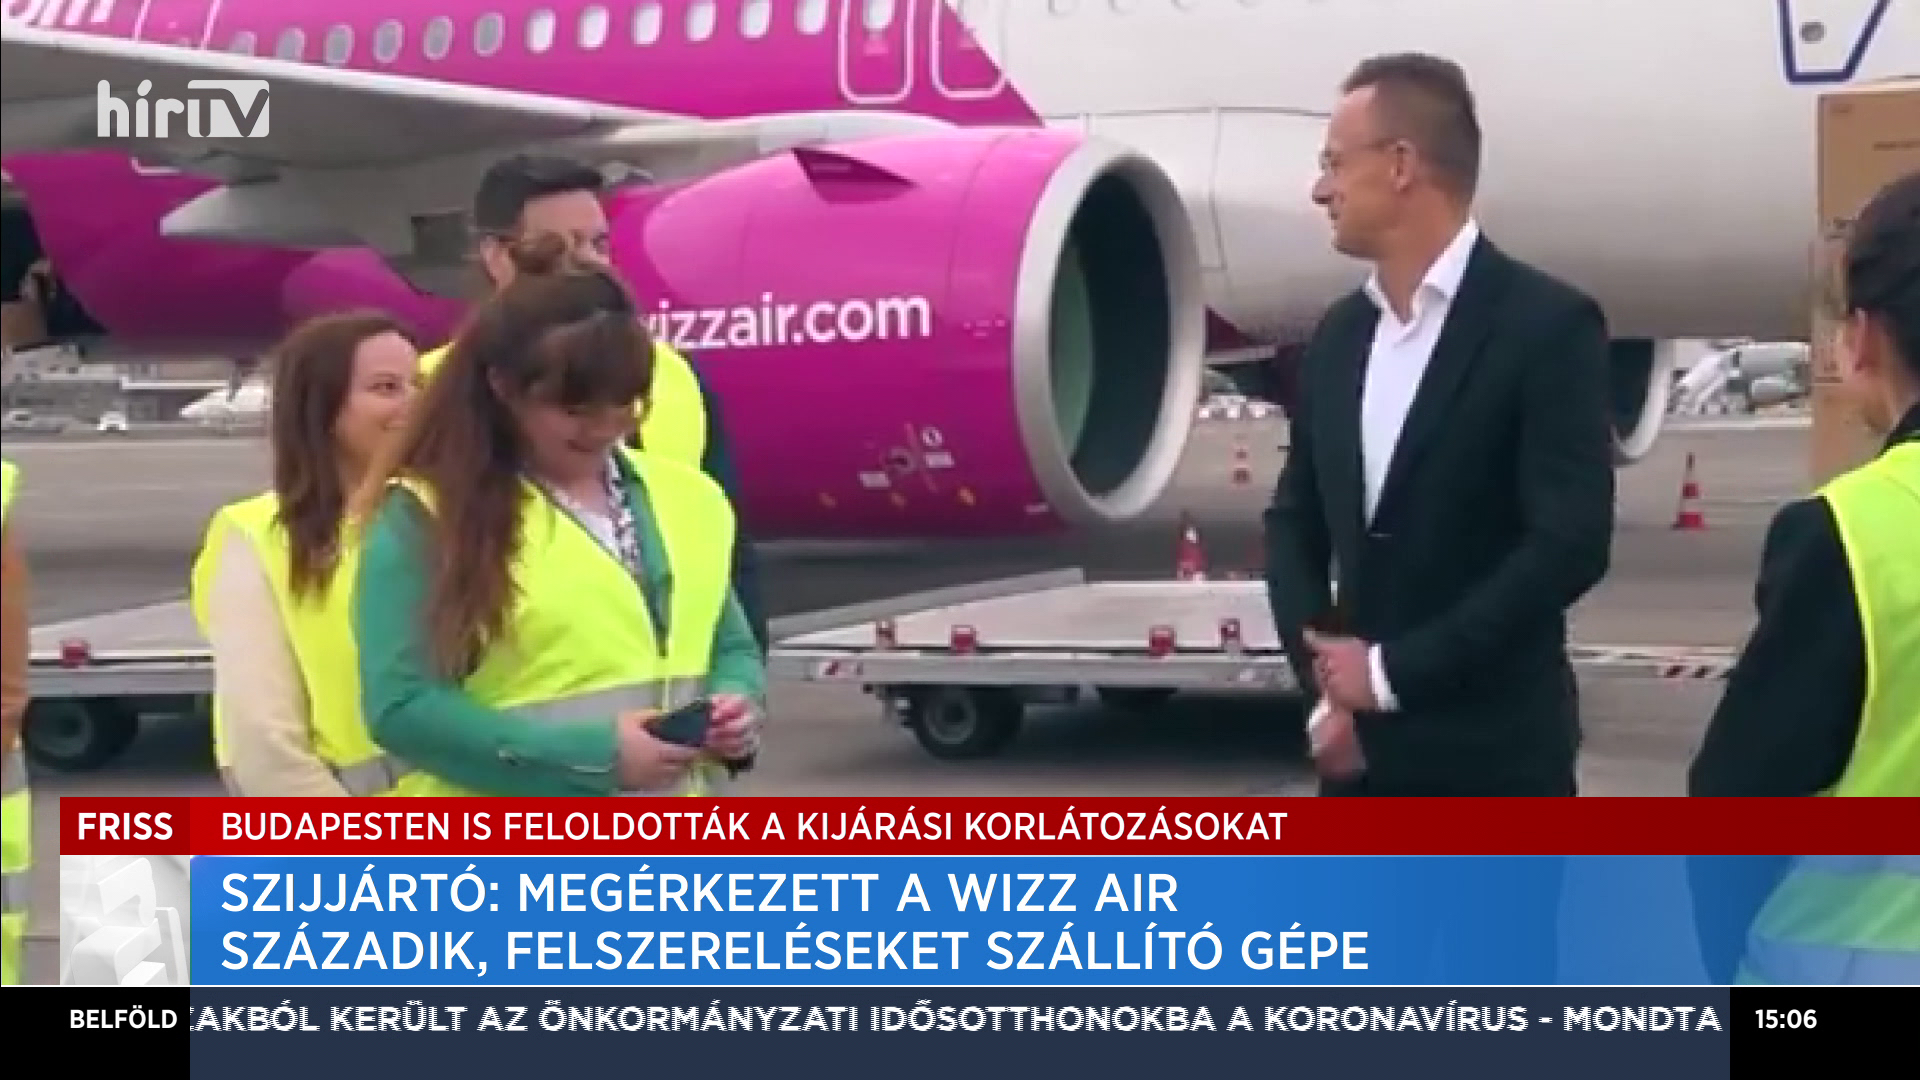 Szijjártó: Megérkezett a Wizz Air századik, felszereléseket szállító gépe